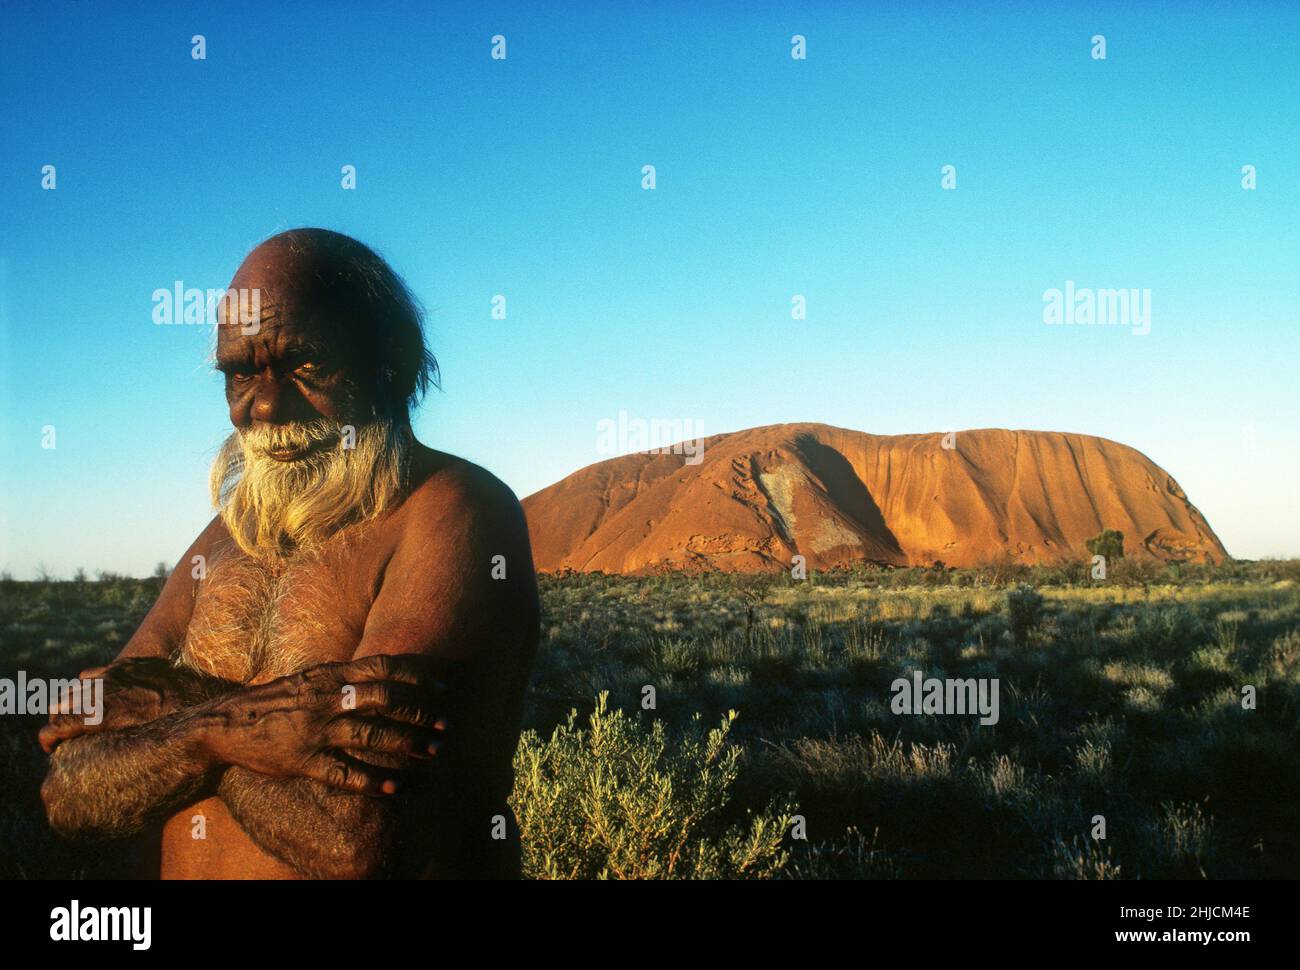 Toby Kaninga, ein einheimischer Australier, steht in der Nähe der großen Sandsteinformation, die als Ayers Rock bekannt ist. Das Wahrzeichen ist für die Aborigines der Region heilig und macht den Tourismus manchmal zu einem heiklen Thema. Foto c. 1982. Stockfoto